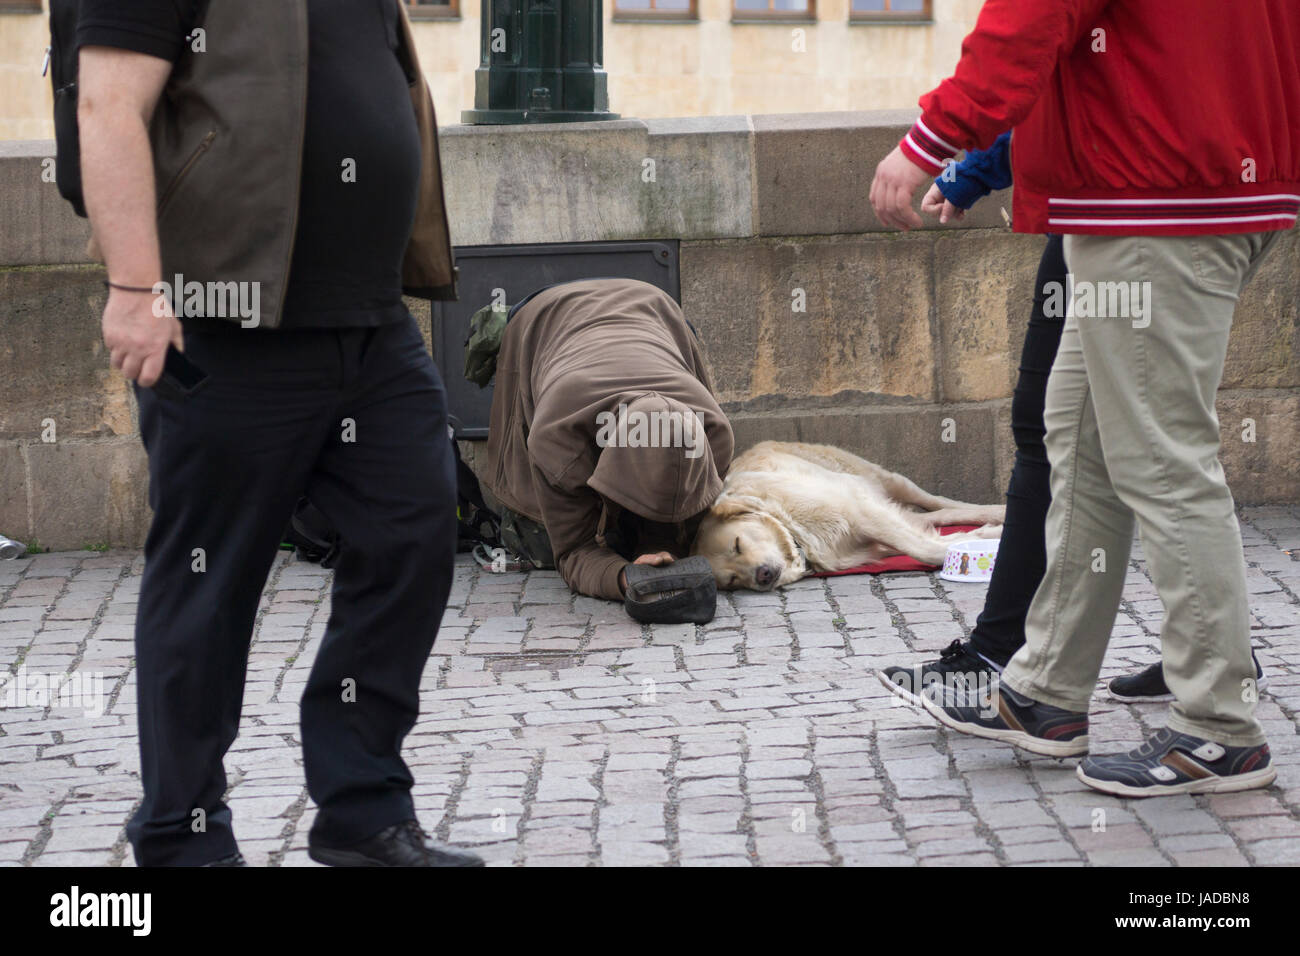 Menschen, die an einem Bettler und seinem Hund in Prag vorbeilaufen. Konzept: Obdachlose in Europa, Betteln, Armut, Bankrott, Menschen, die ignorieren Stockfoto